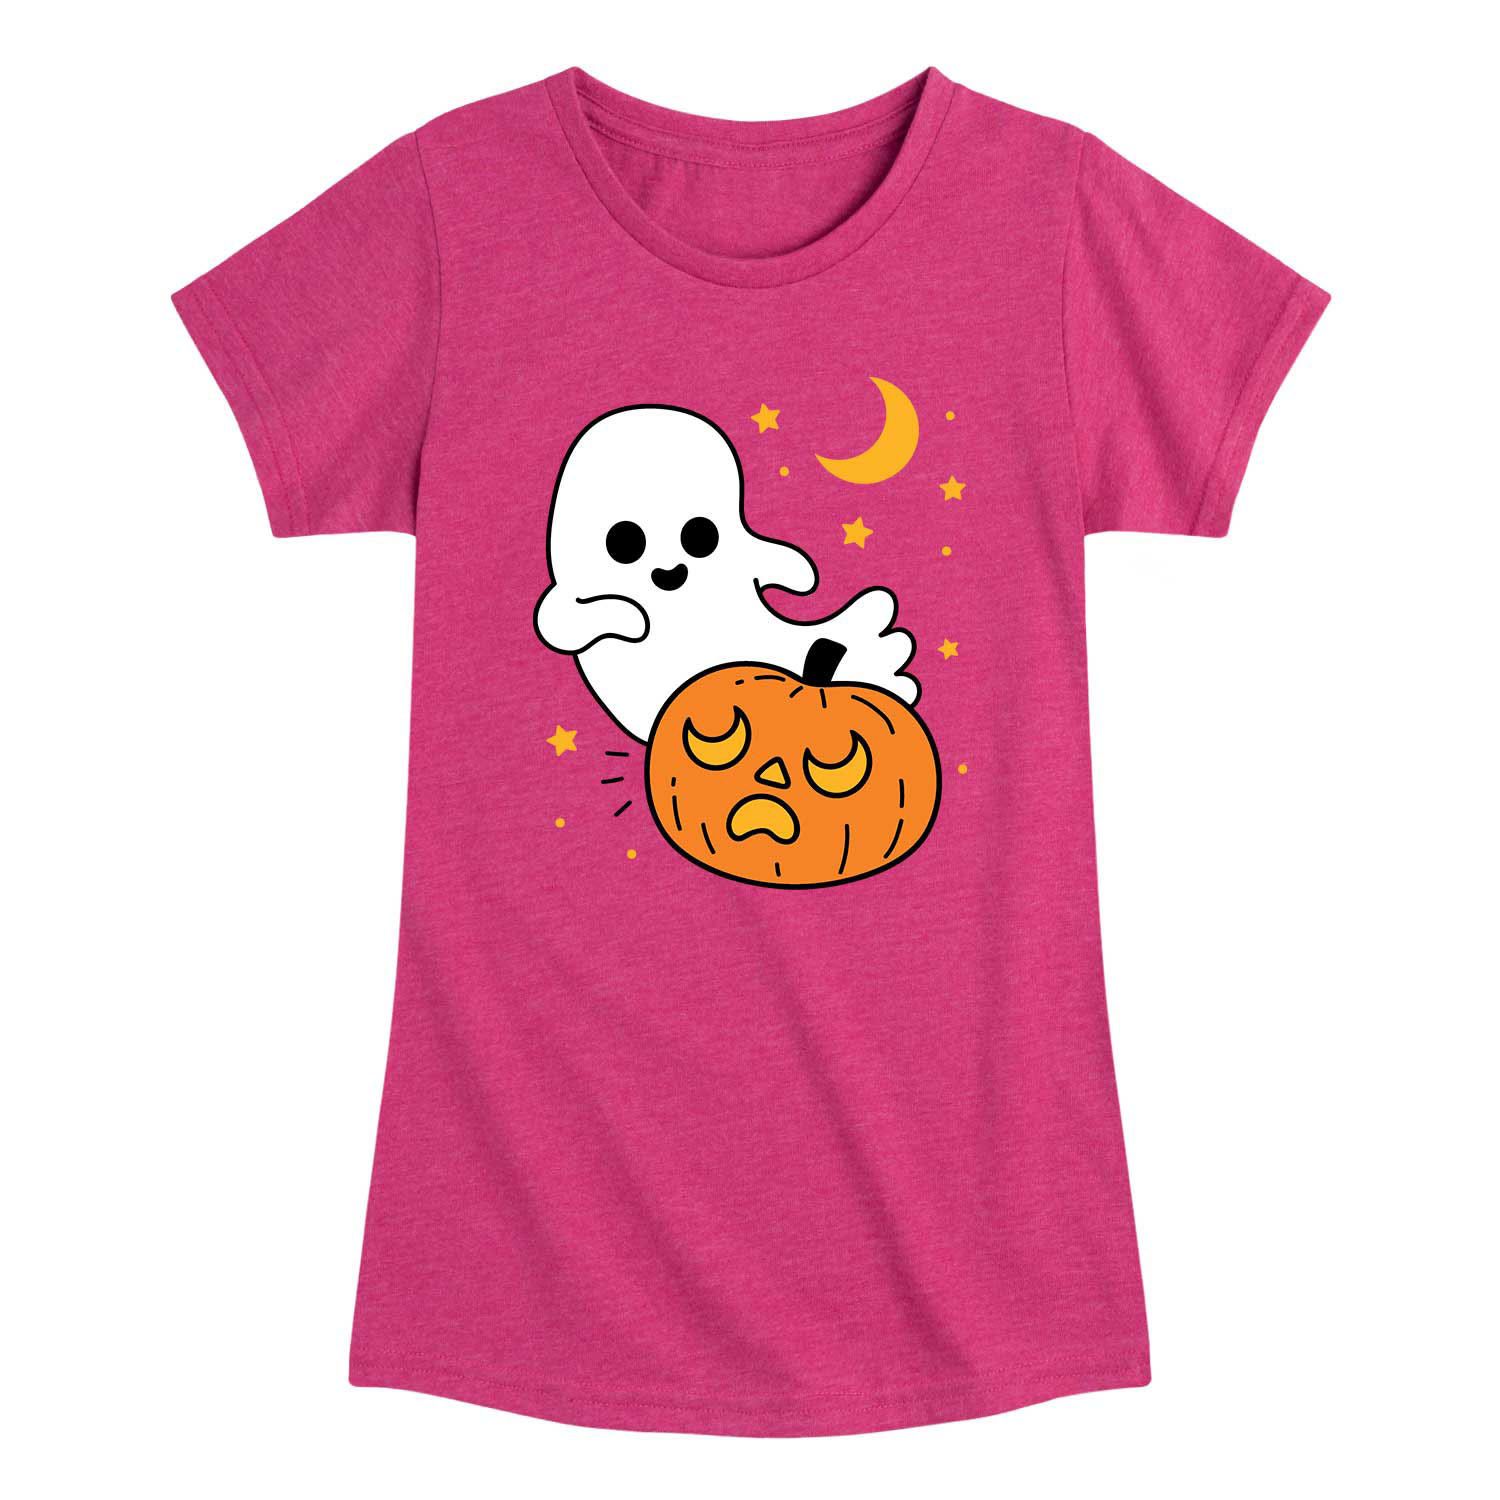 Осенняя футболка с рисунком тыквы и призраков для девочек 7–16 лет Licensed Character футболка с рисунком конфет и тыквы для девочек 7–16 лет licensed character